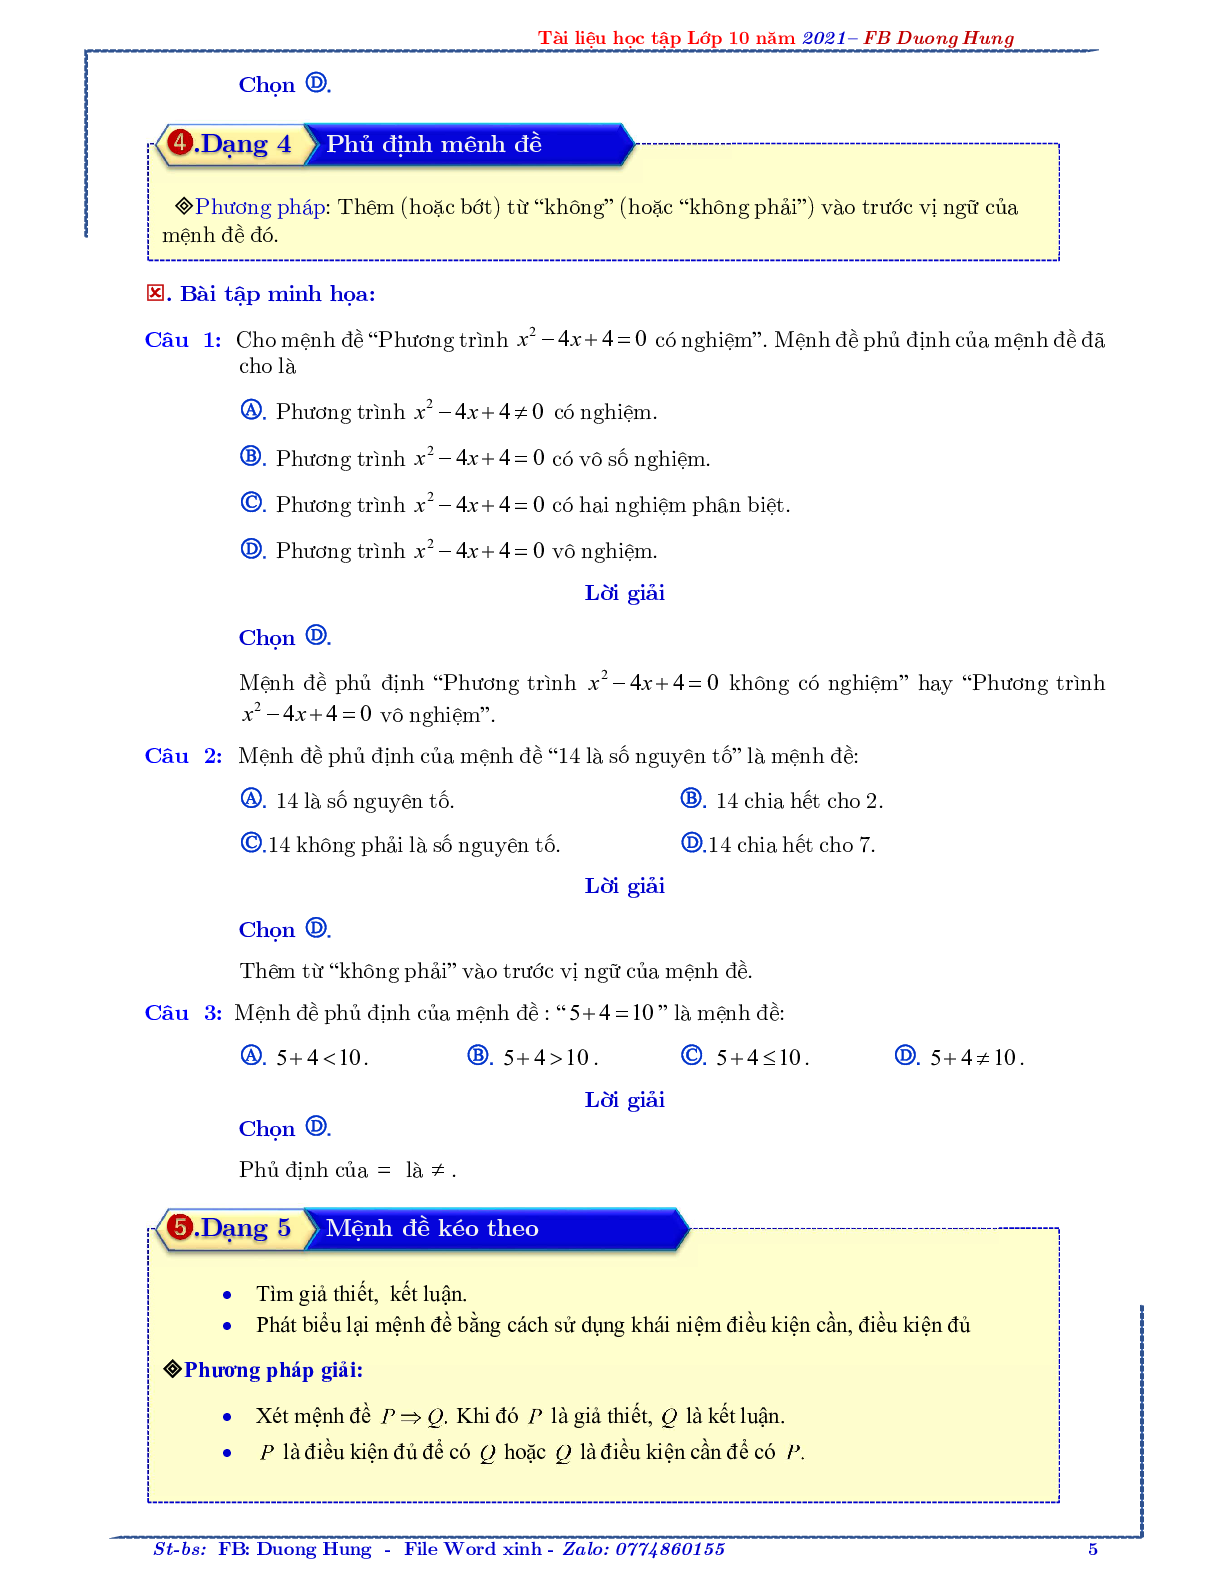 Chuyên đề về mệnh đề và tập hợp - bản 1 (trang 5)